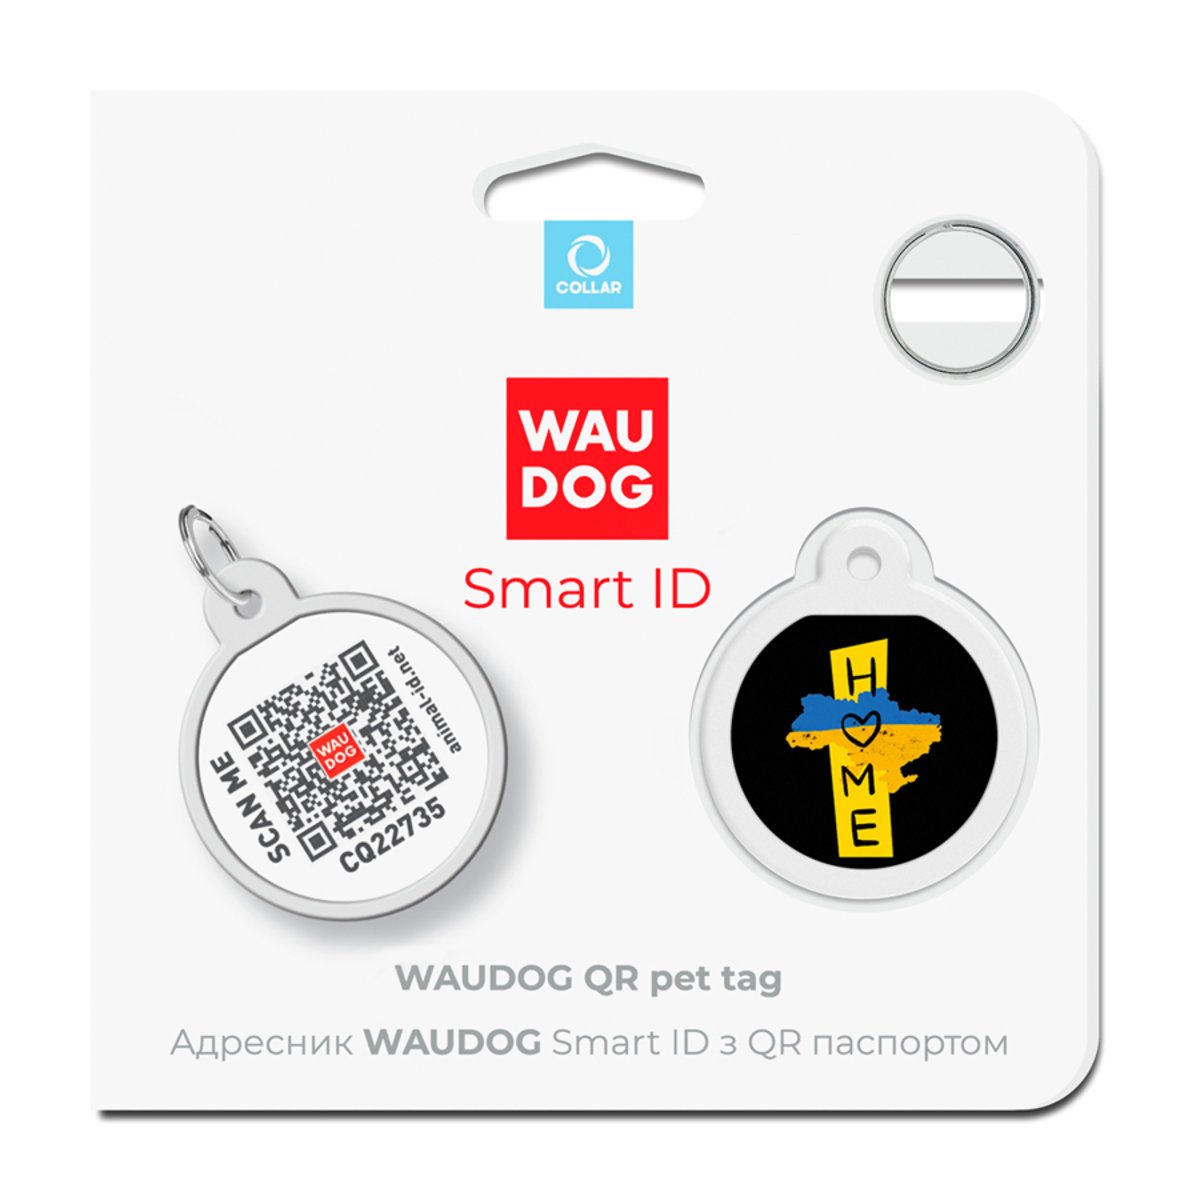 Адресник для собак и кошек Waudog Smart ID с QR паспортом, Дом, S, диаметр 25 мм - фото 5